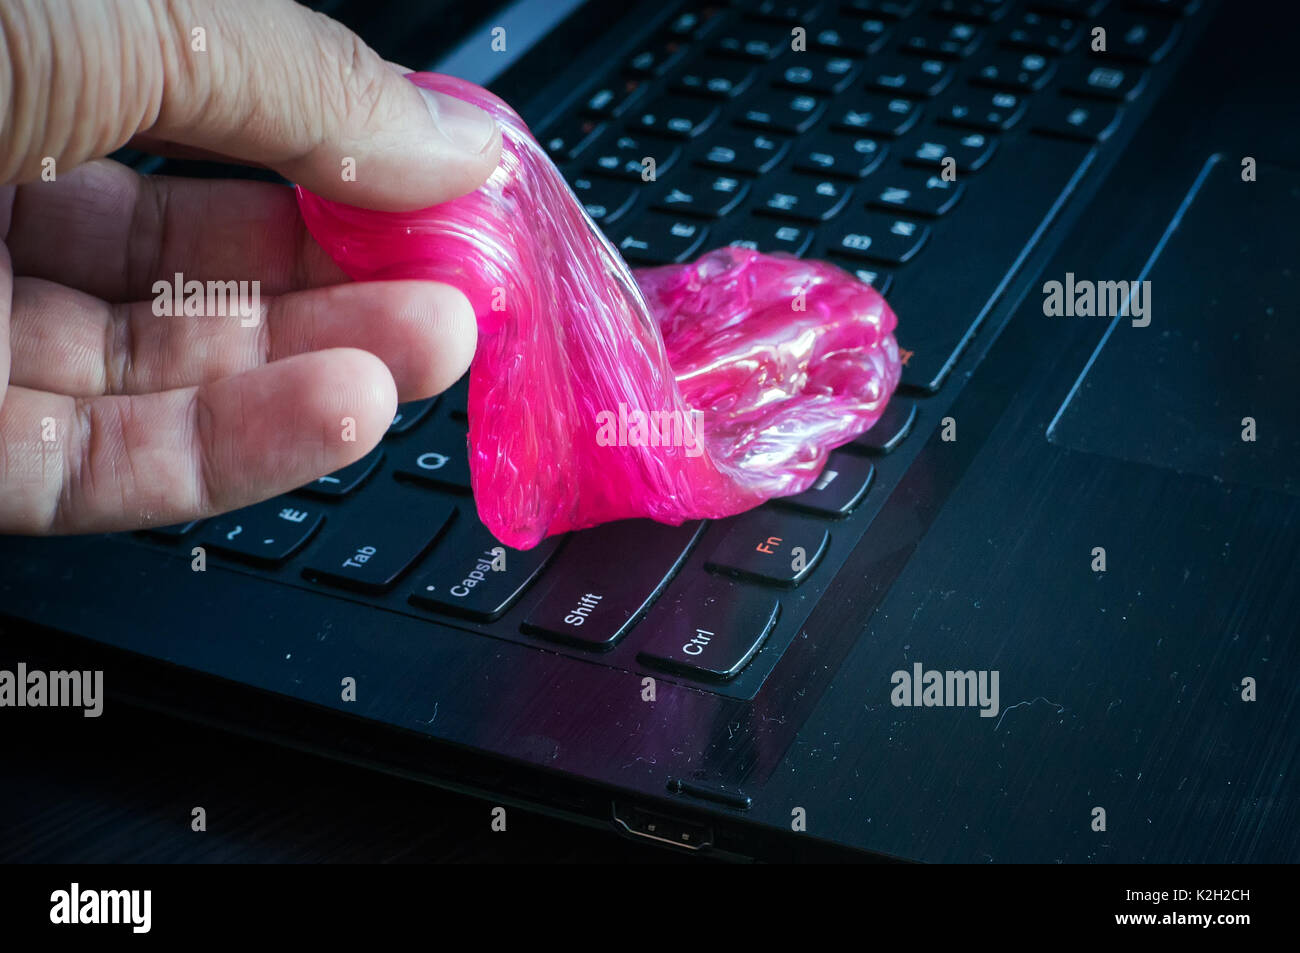 Schleim ist das ultimative Werkzeug, um die Tastatur vor Staub und Schmutz  zu reinigen Stockfotografie - Alamy